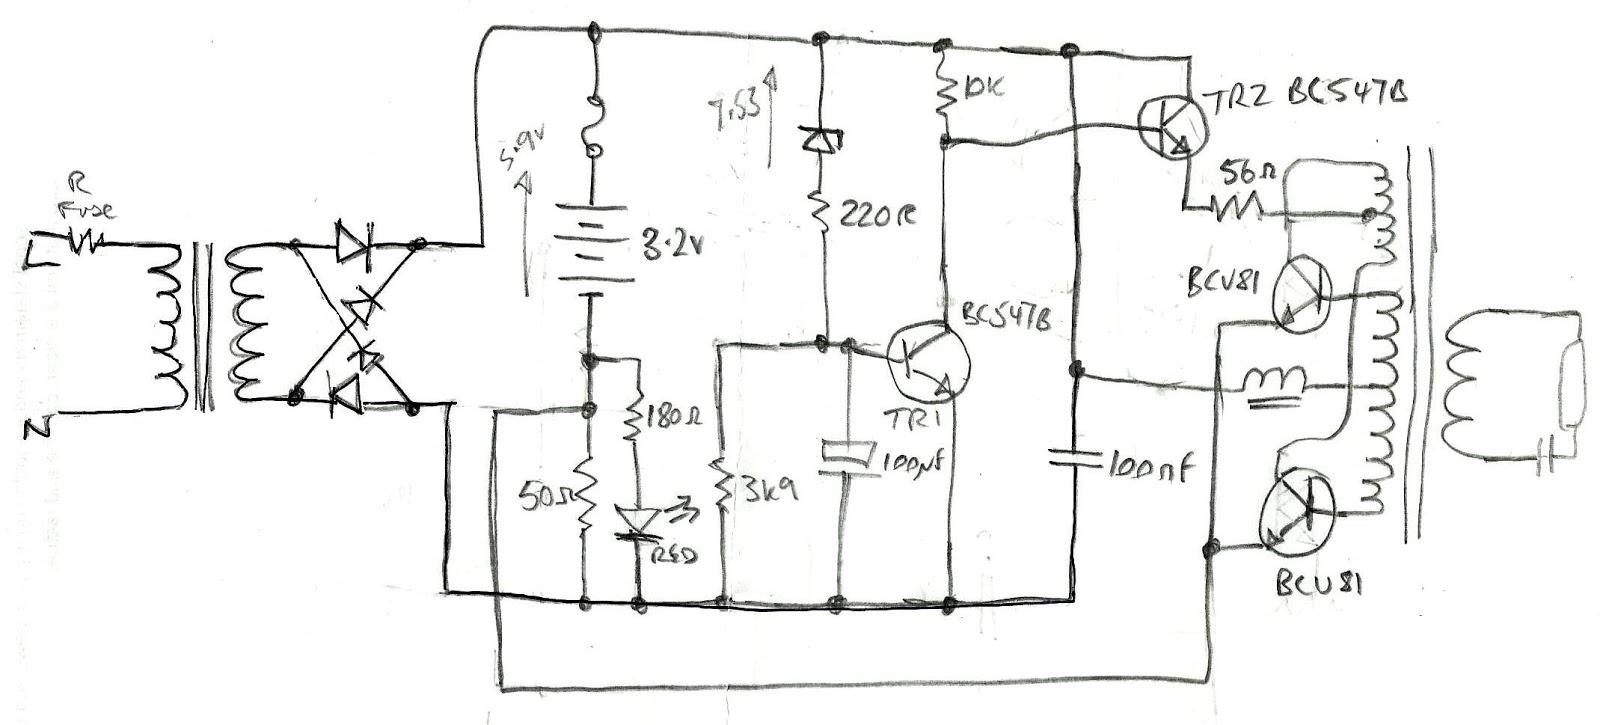 8 3 CFL INVERTER CIRCUIT DIAGRAM - InverterDiagram